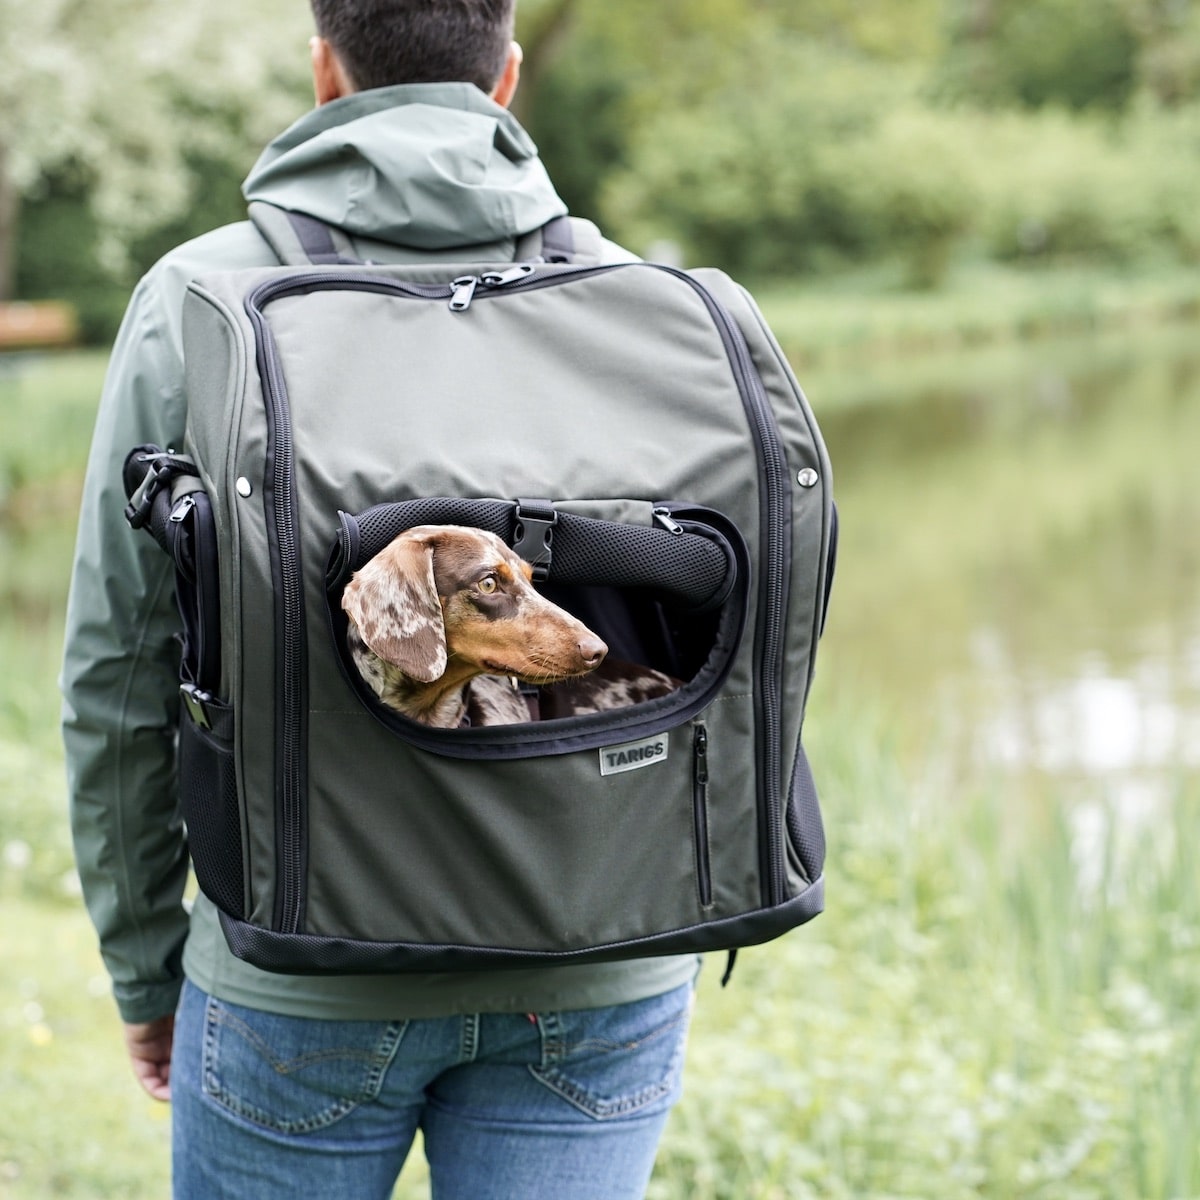 Hombre que lleva la mochila TARIGS Dachshund con un perro salchicha miniatura en su interior en color verde oliva